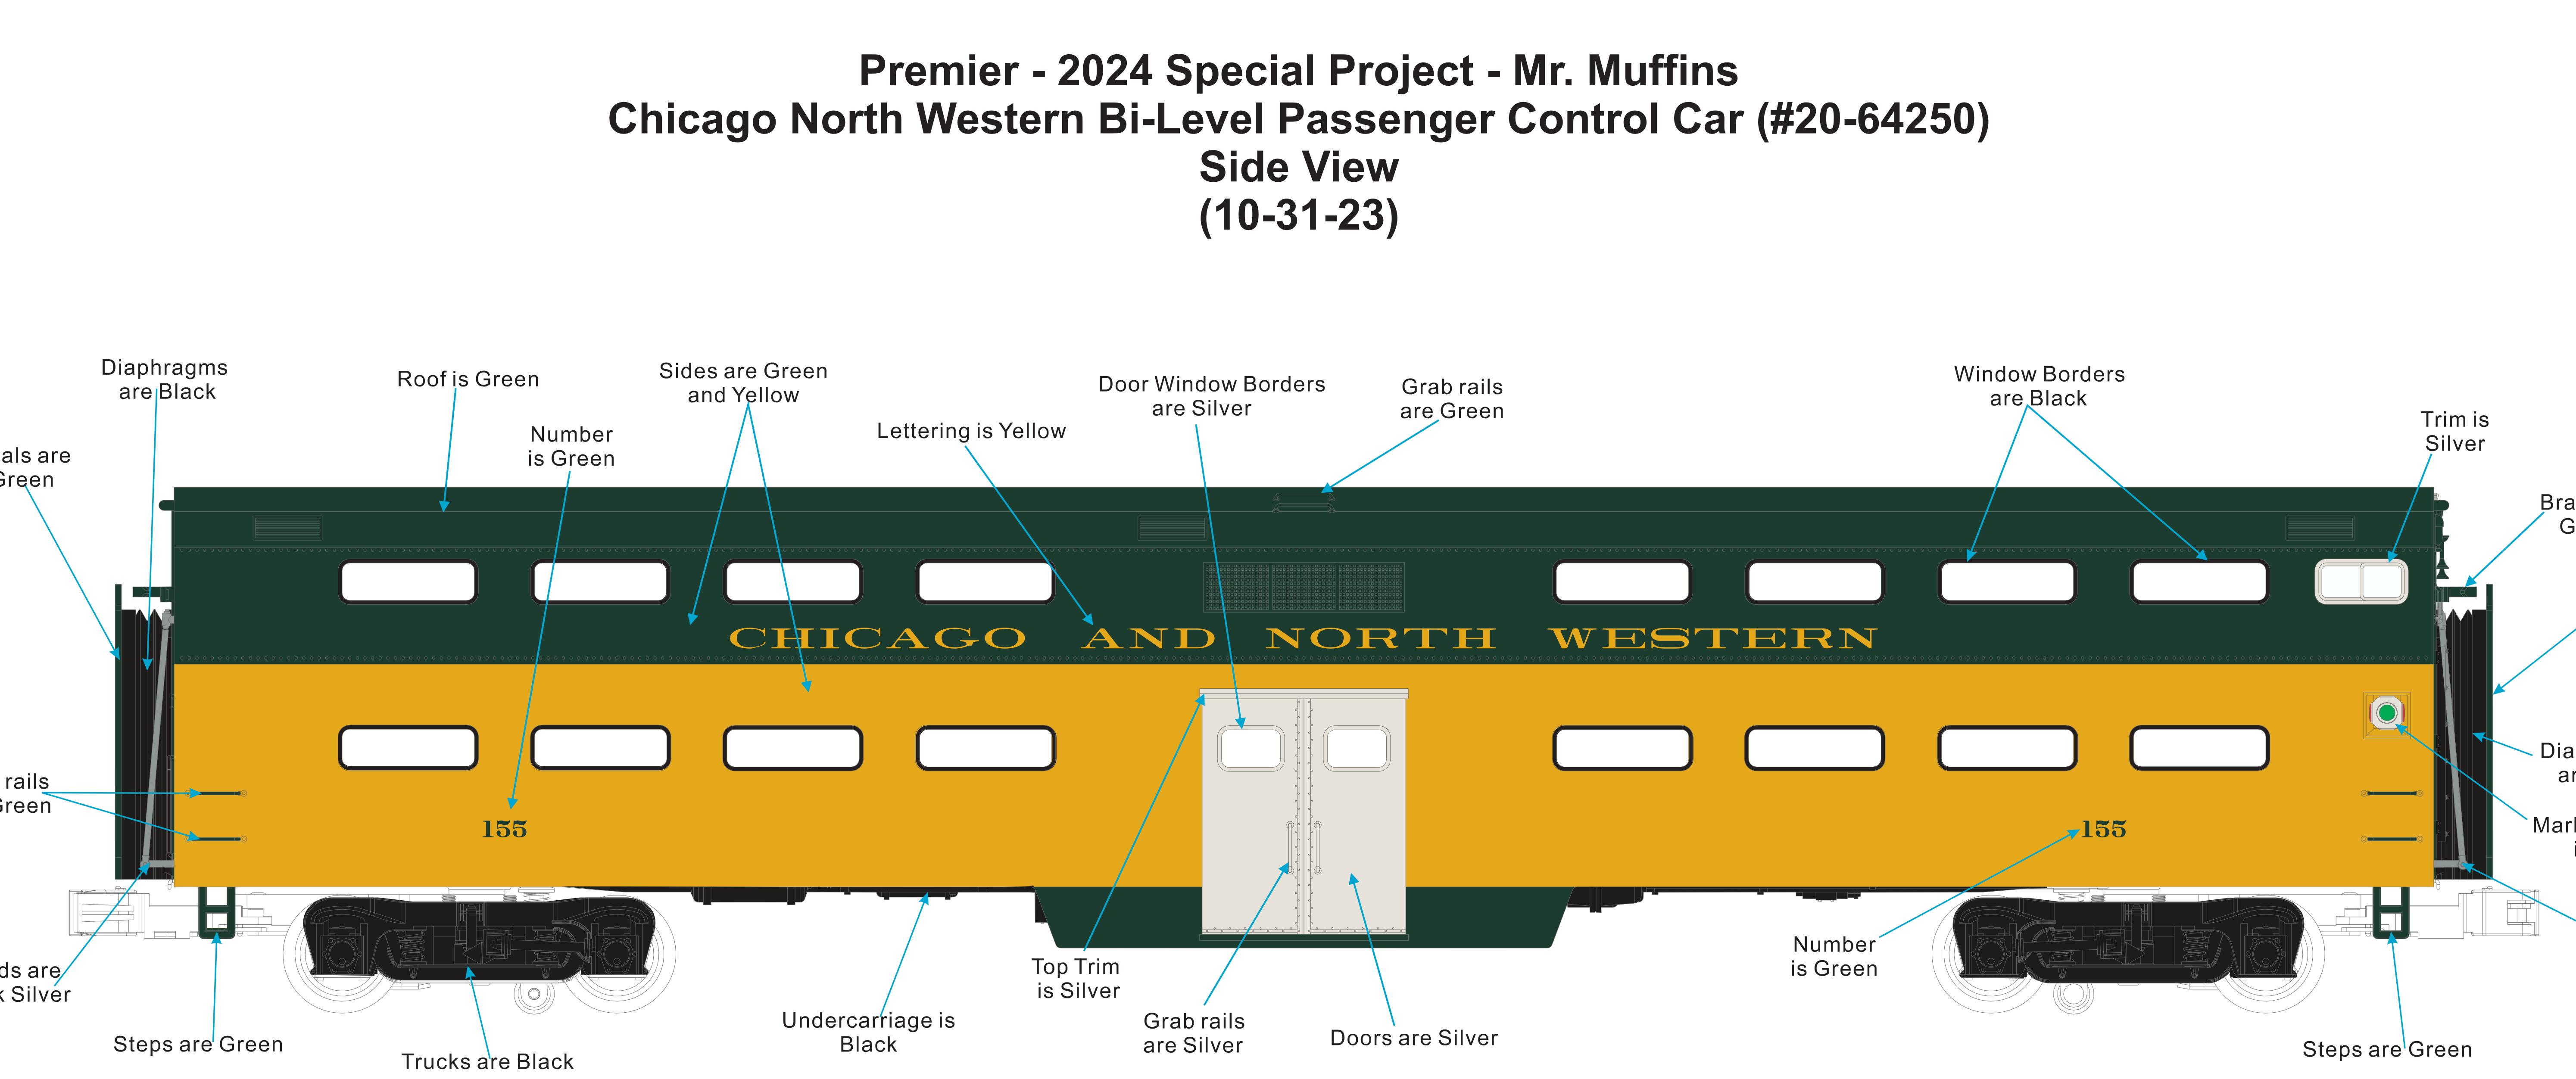 MTH - Premier - 70’ Bi-Level Gallery Car "Chicago & North Western” (6-Car) - Custom Run for MrMuffin'sTrains